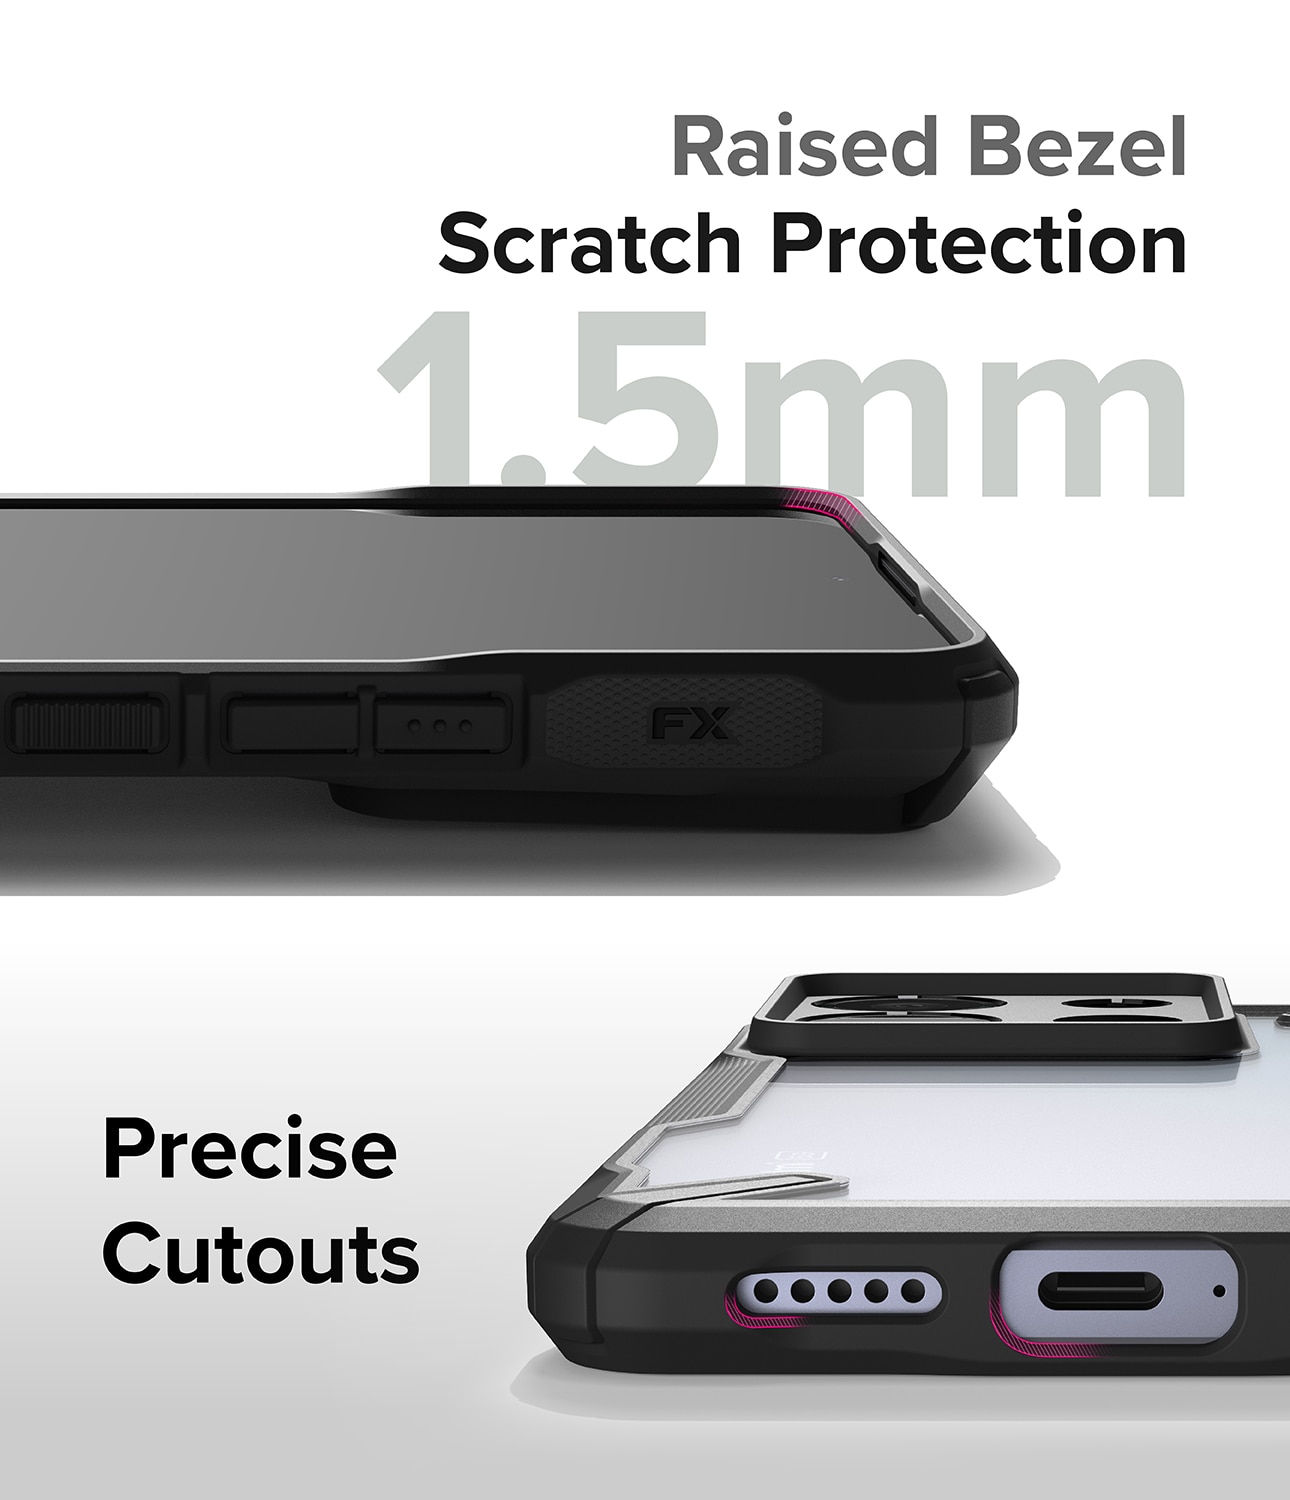 Fusion X Case Xiaomi Redmi Note 13 Pro sort